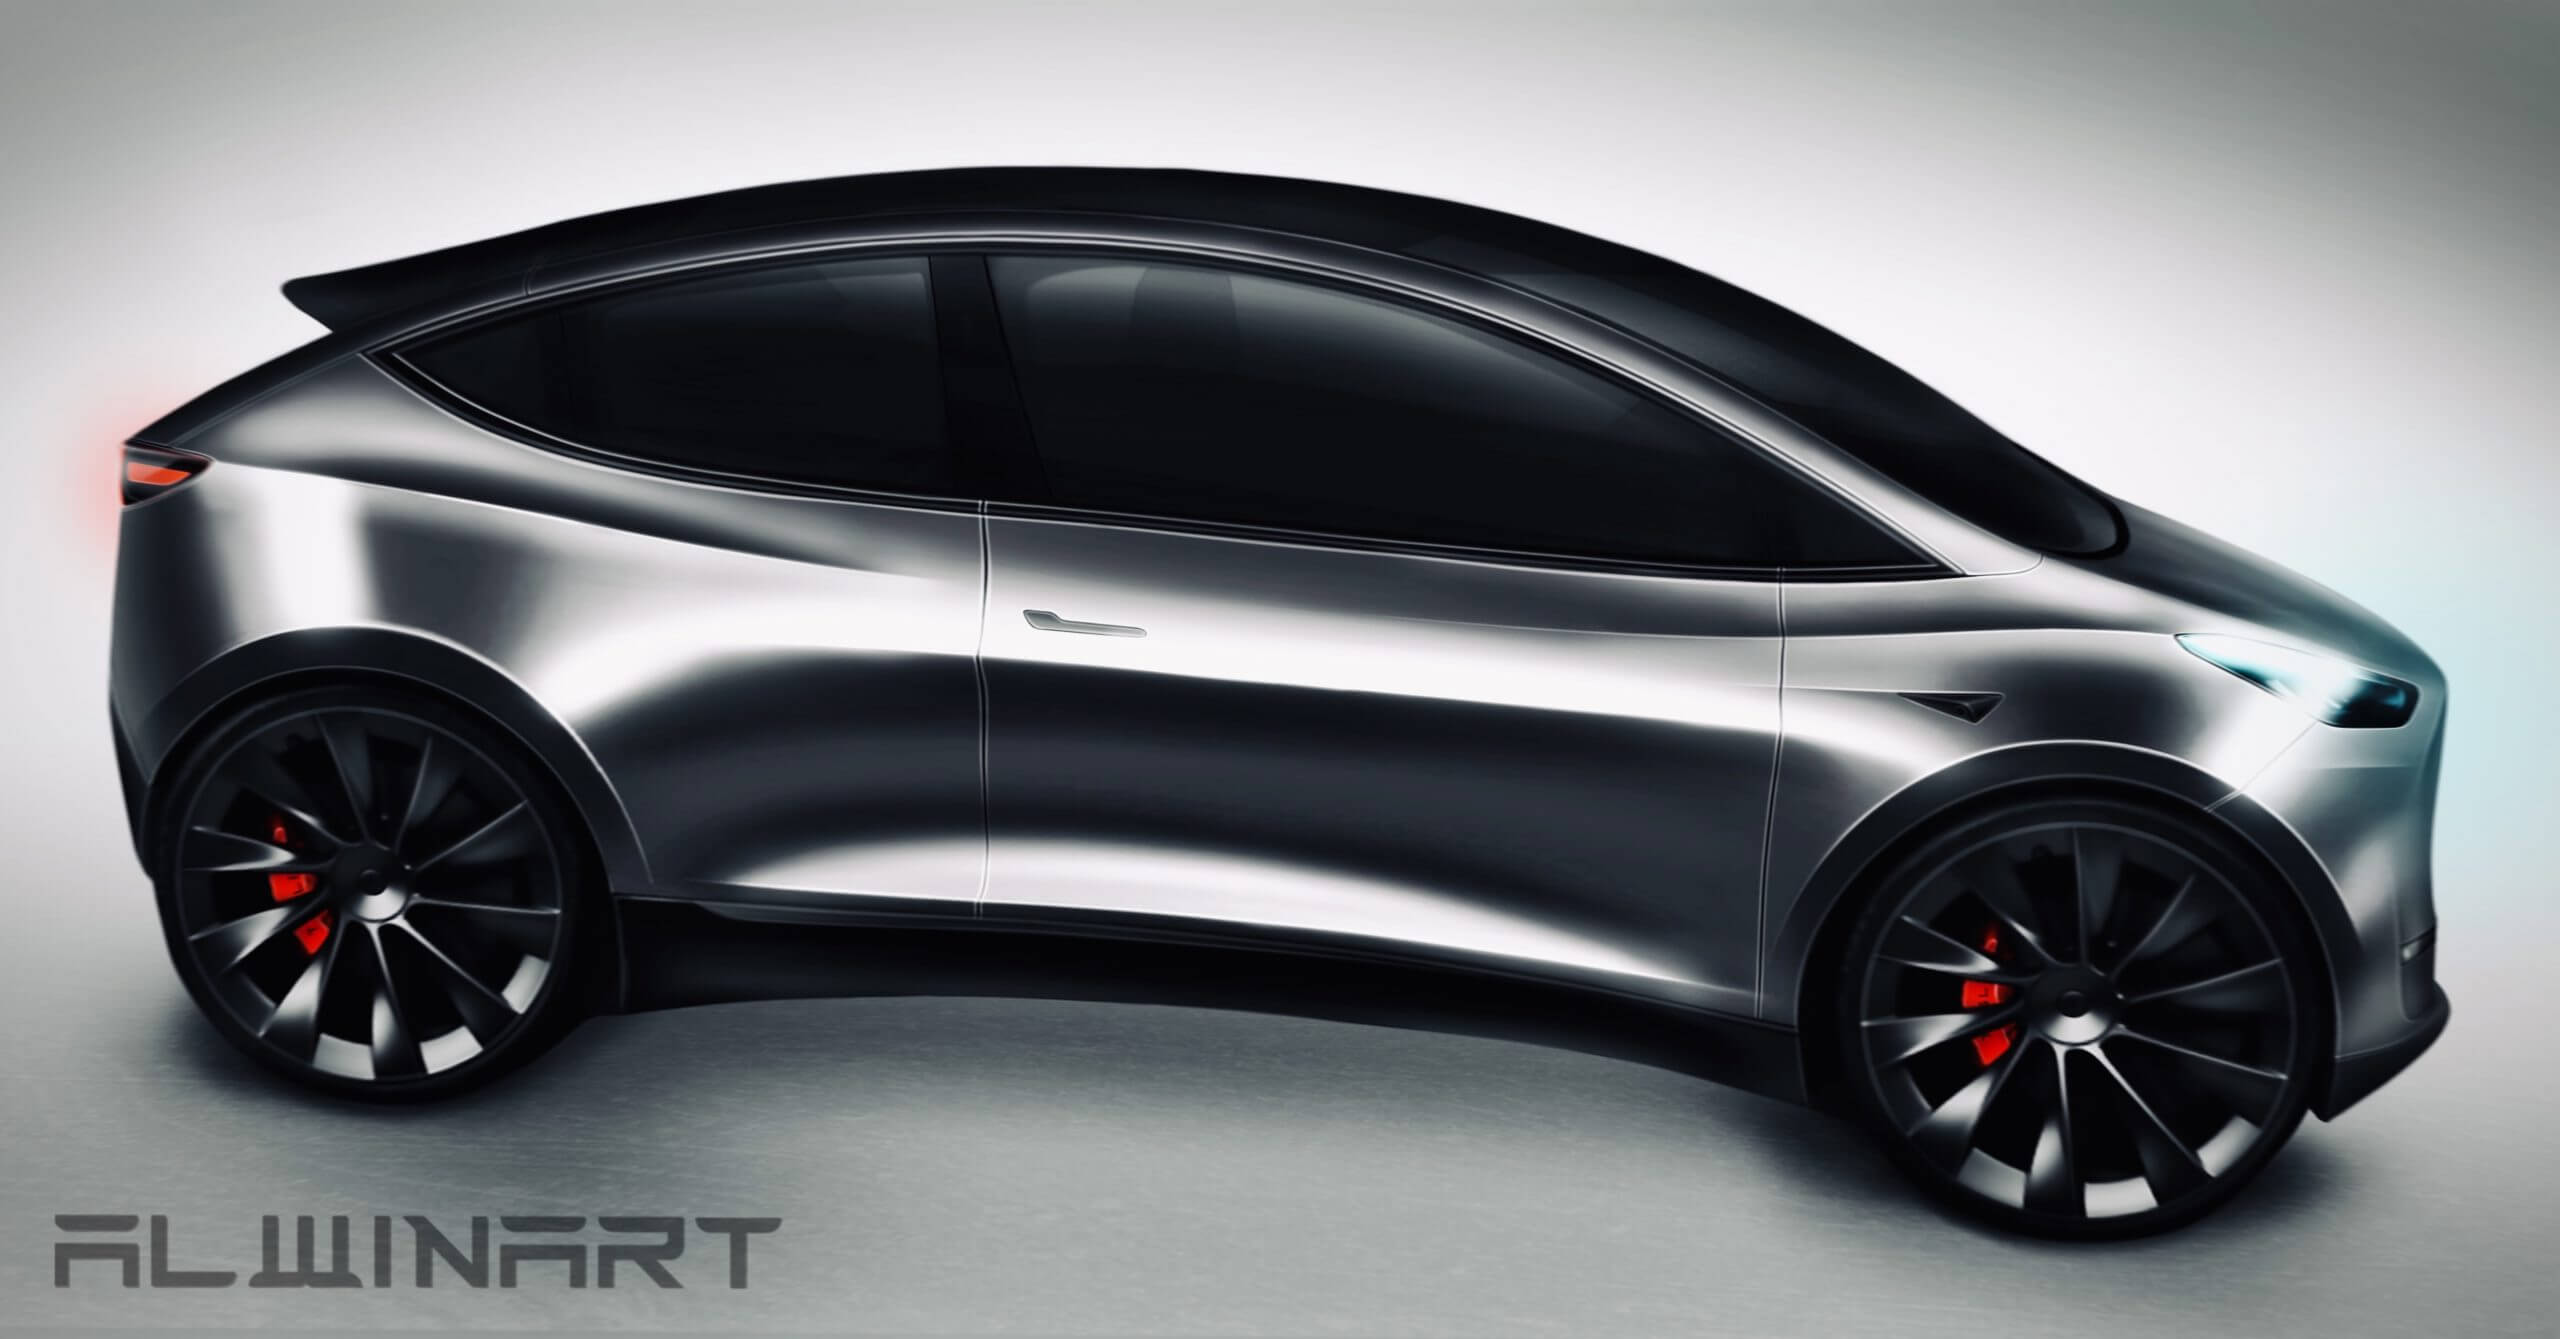 Tesla noemt Robotaxi formeel als onderdeel van voertuigen “in ontwikkeling”